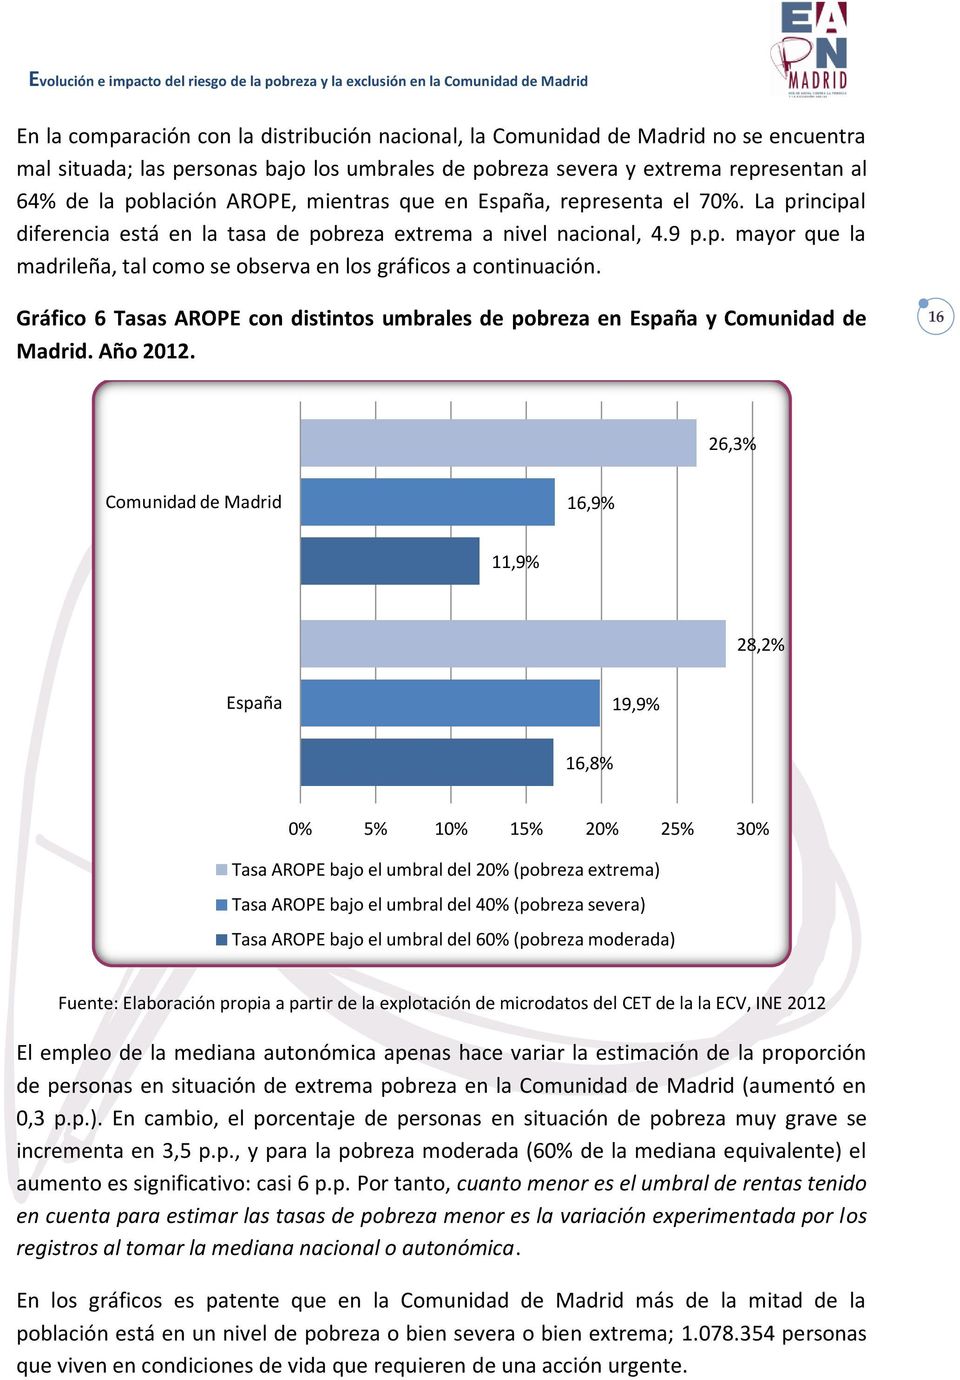 Gráfico 6 Tasas AROPE con distintos umbrales de pobreza en España y Comunidad de Madrid. Año 2012.